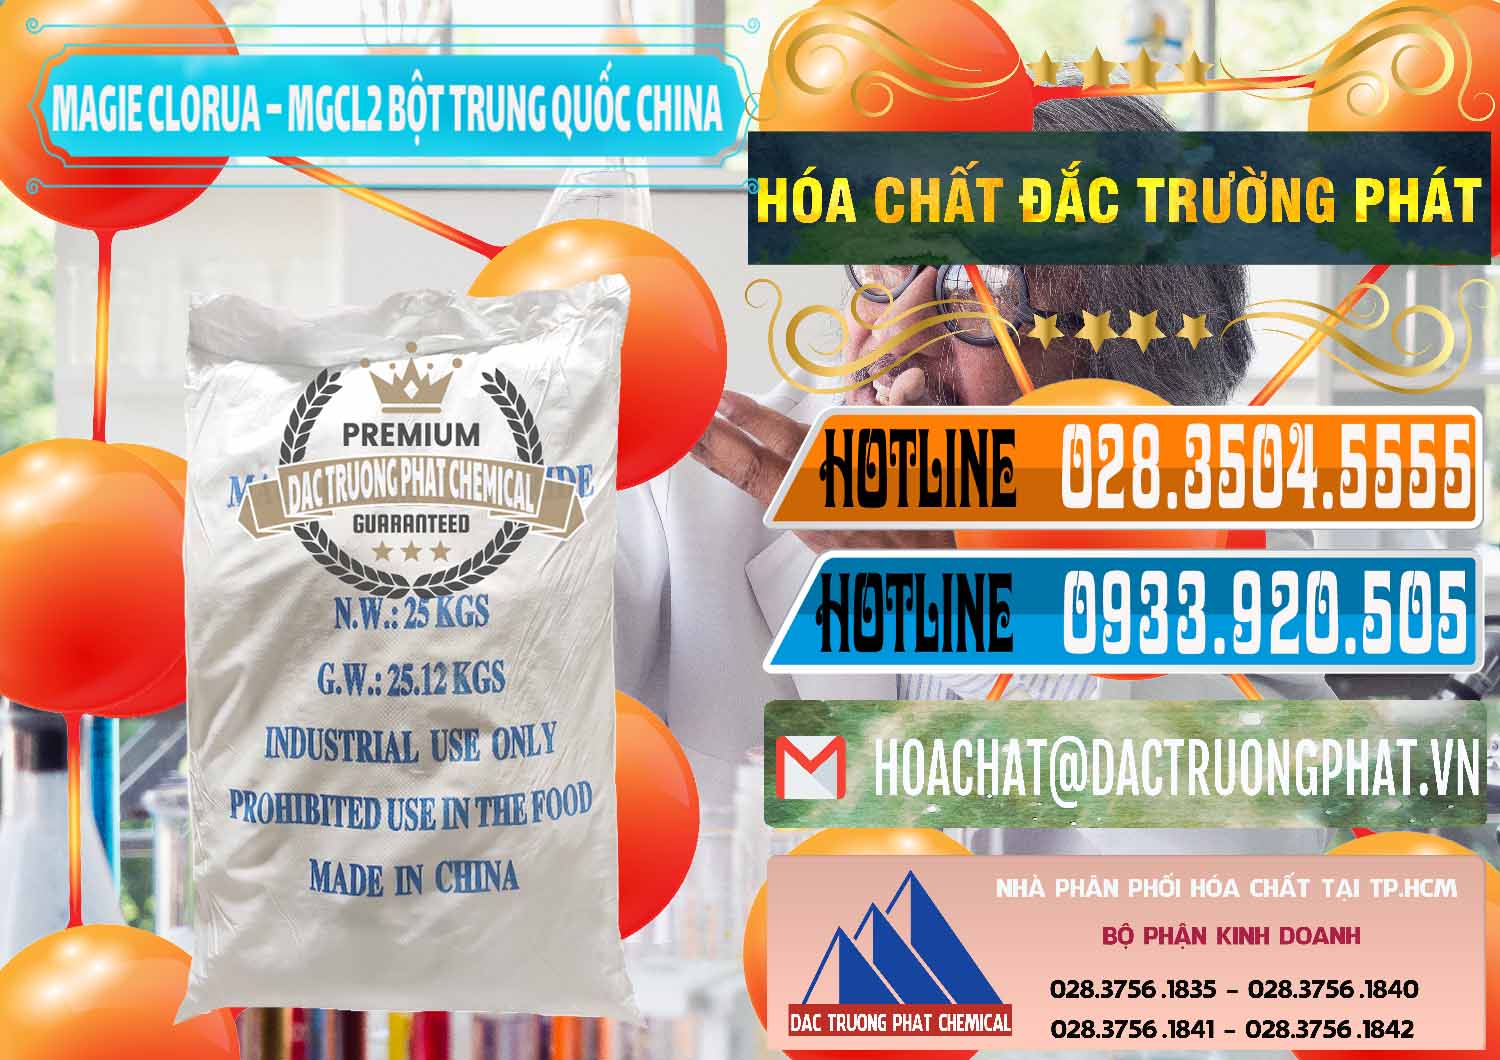 Đơn vị nhập khẩu và bán Magie Clorua – MGCL2 96% Dạng Bột Bao Chữ Xanh Trung Quốc China - 0207 - Cty chuyên kinh doanh - phân phối hóa chất tại TP.HCM - stmp.net